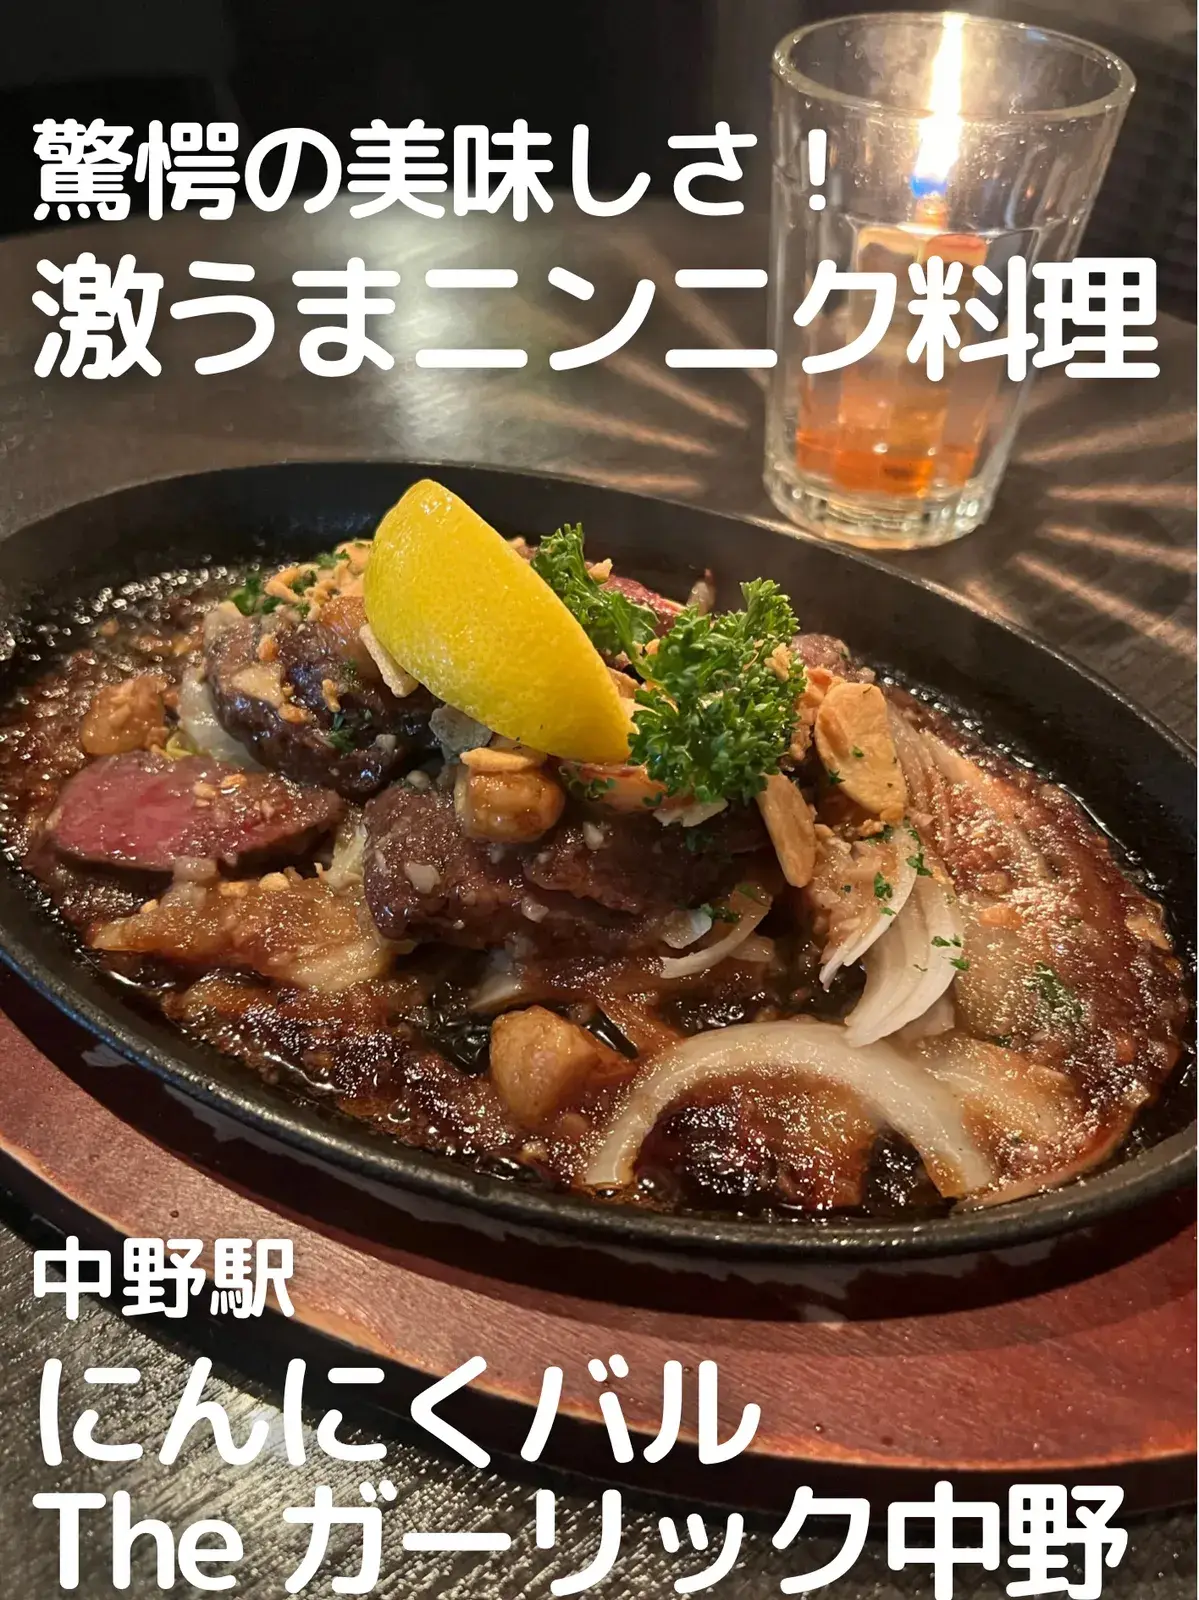 驚愕の美味しさ 激うまニンニク料理 あかねちゃんねる 東京デートが投稿したフォトブック Lemon8